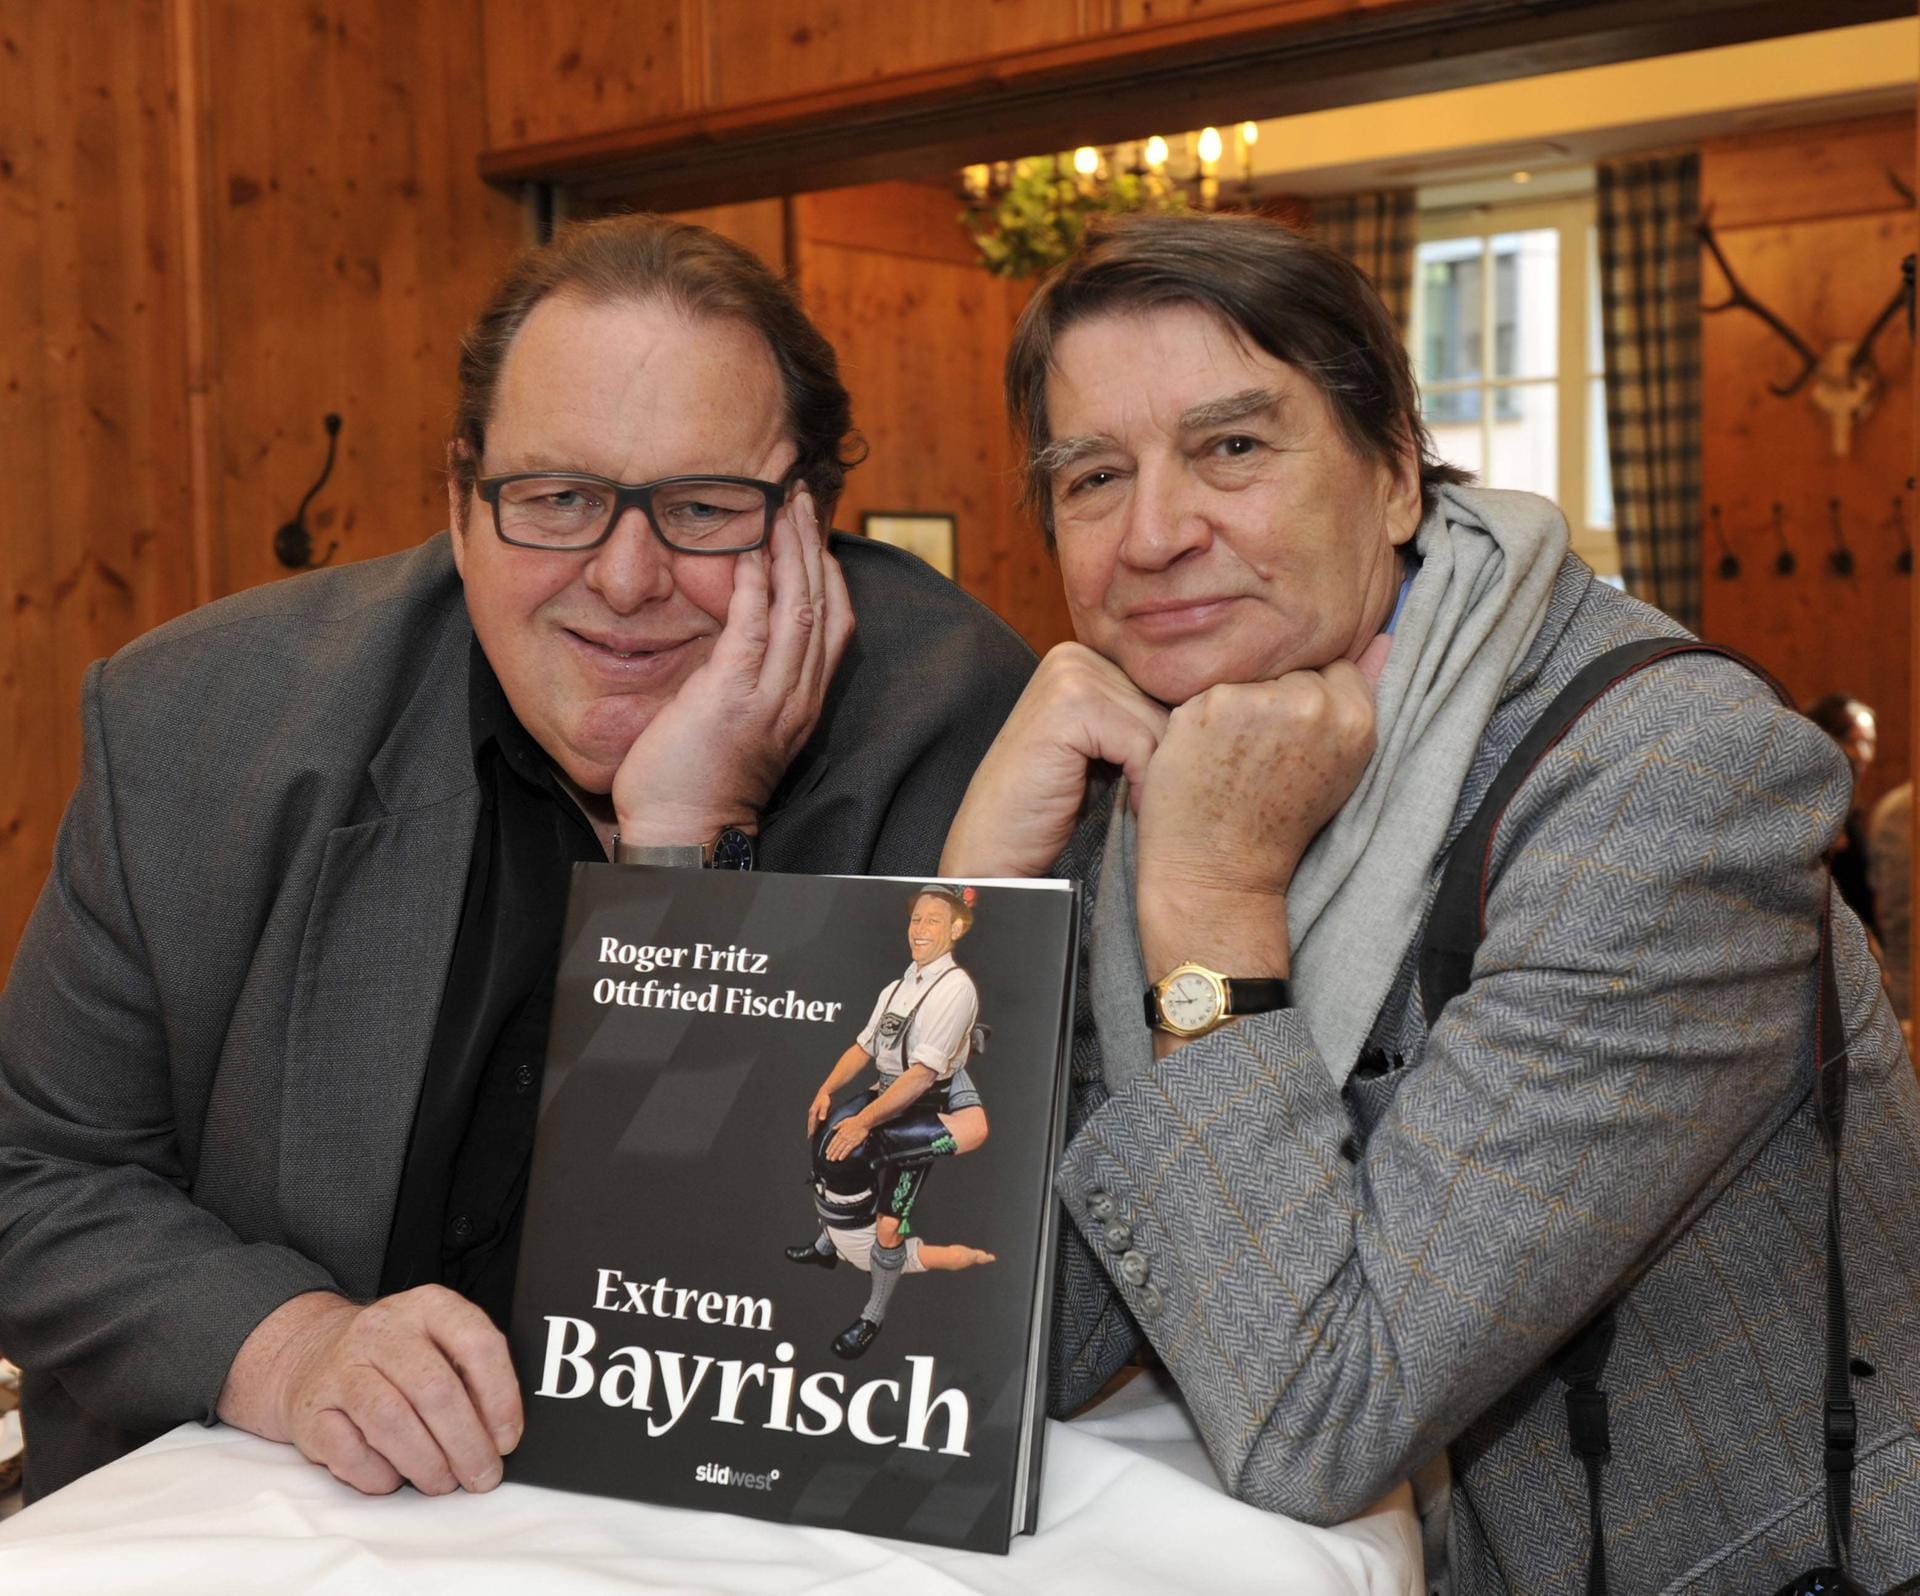 Buchautor: 2010 posierte Ottfried Fischer (l.) gemeinsam mit dem Fotorgafen Roger Fritz (r.) bei der Vorstellung ihres Buches "Extrem Bayerisch".